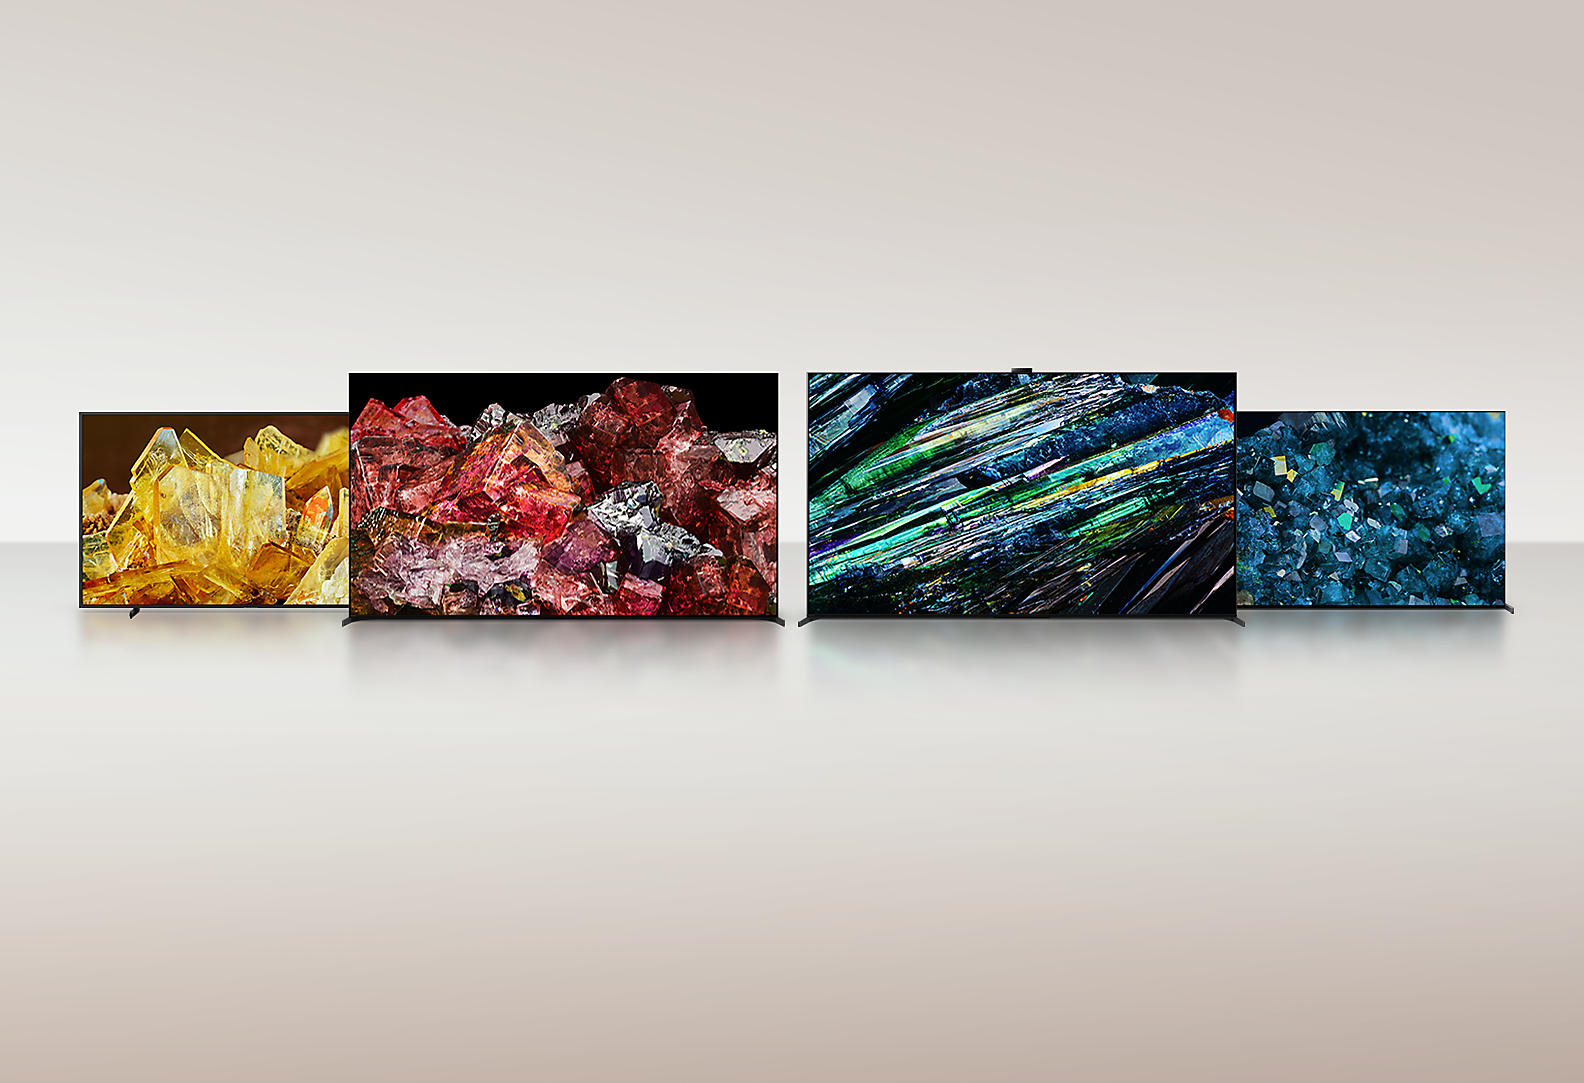 Štyri televízory BRAVIA XR zobrazujúce obrazy rôznych typov kryštálov na celej obrazovke s neuveriteľnými detailmi a farbami